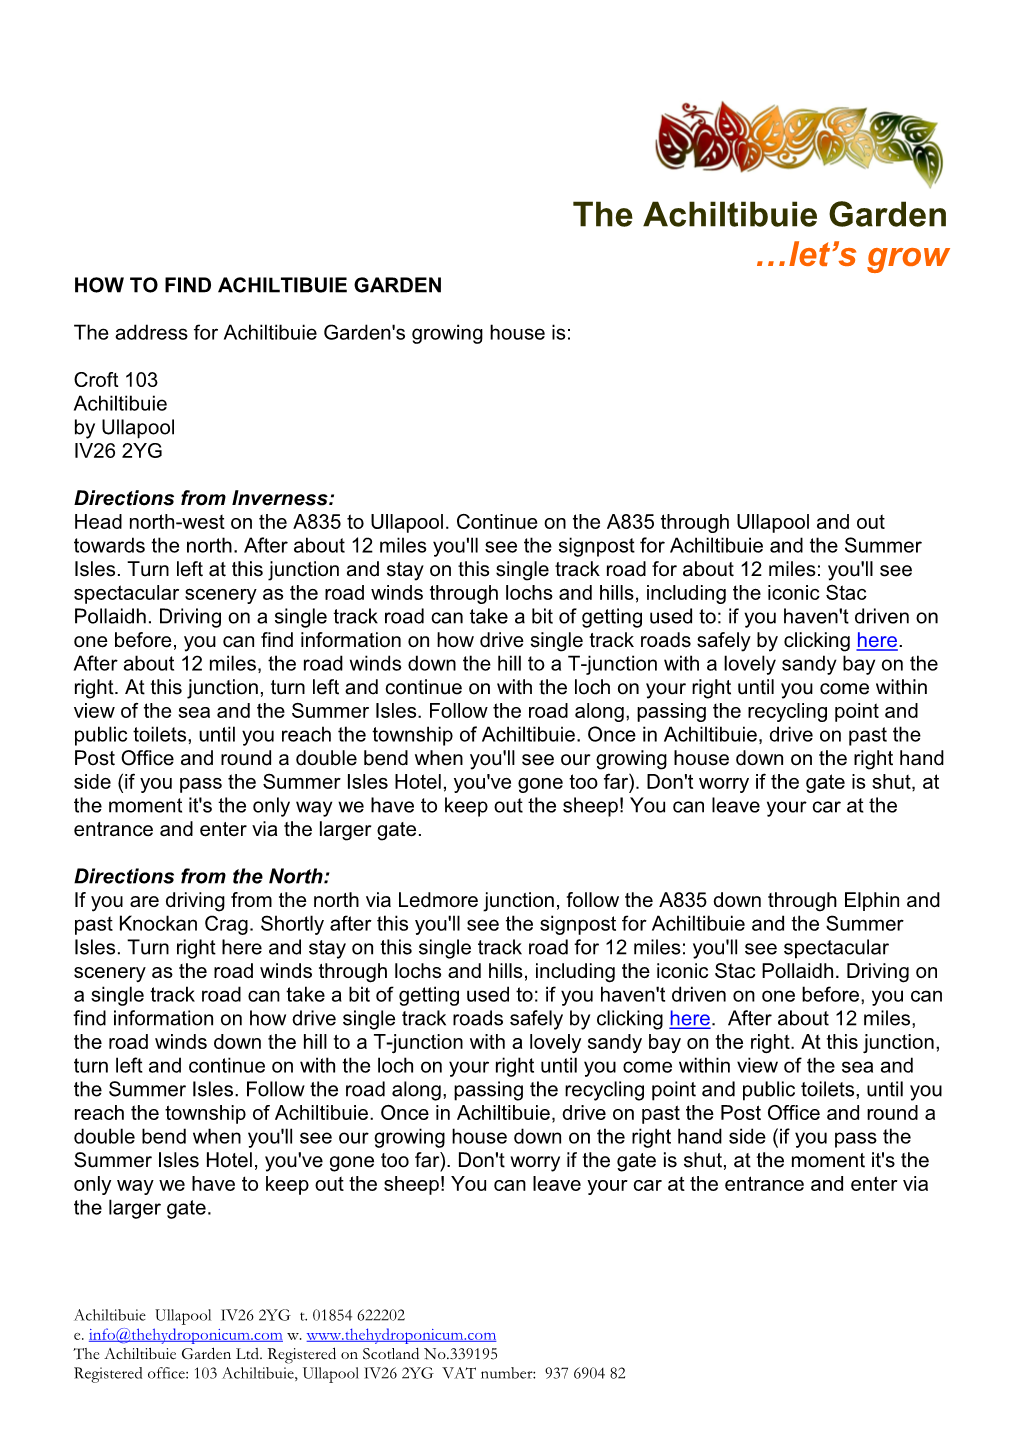 2012-04 How to Find Achiltibuie Garden